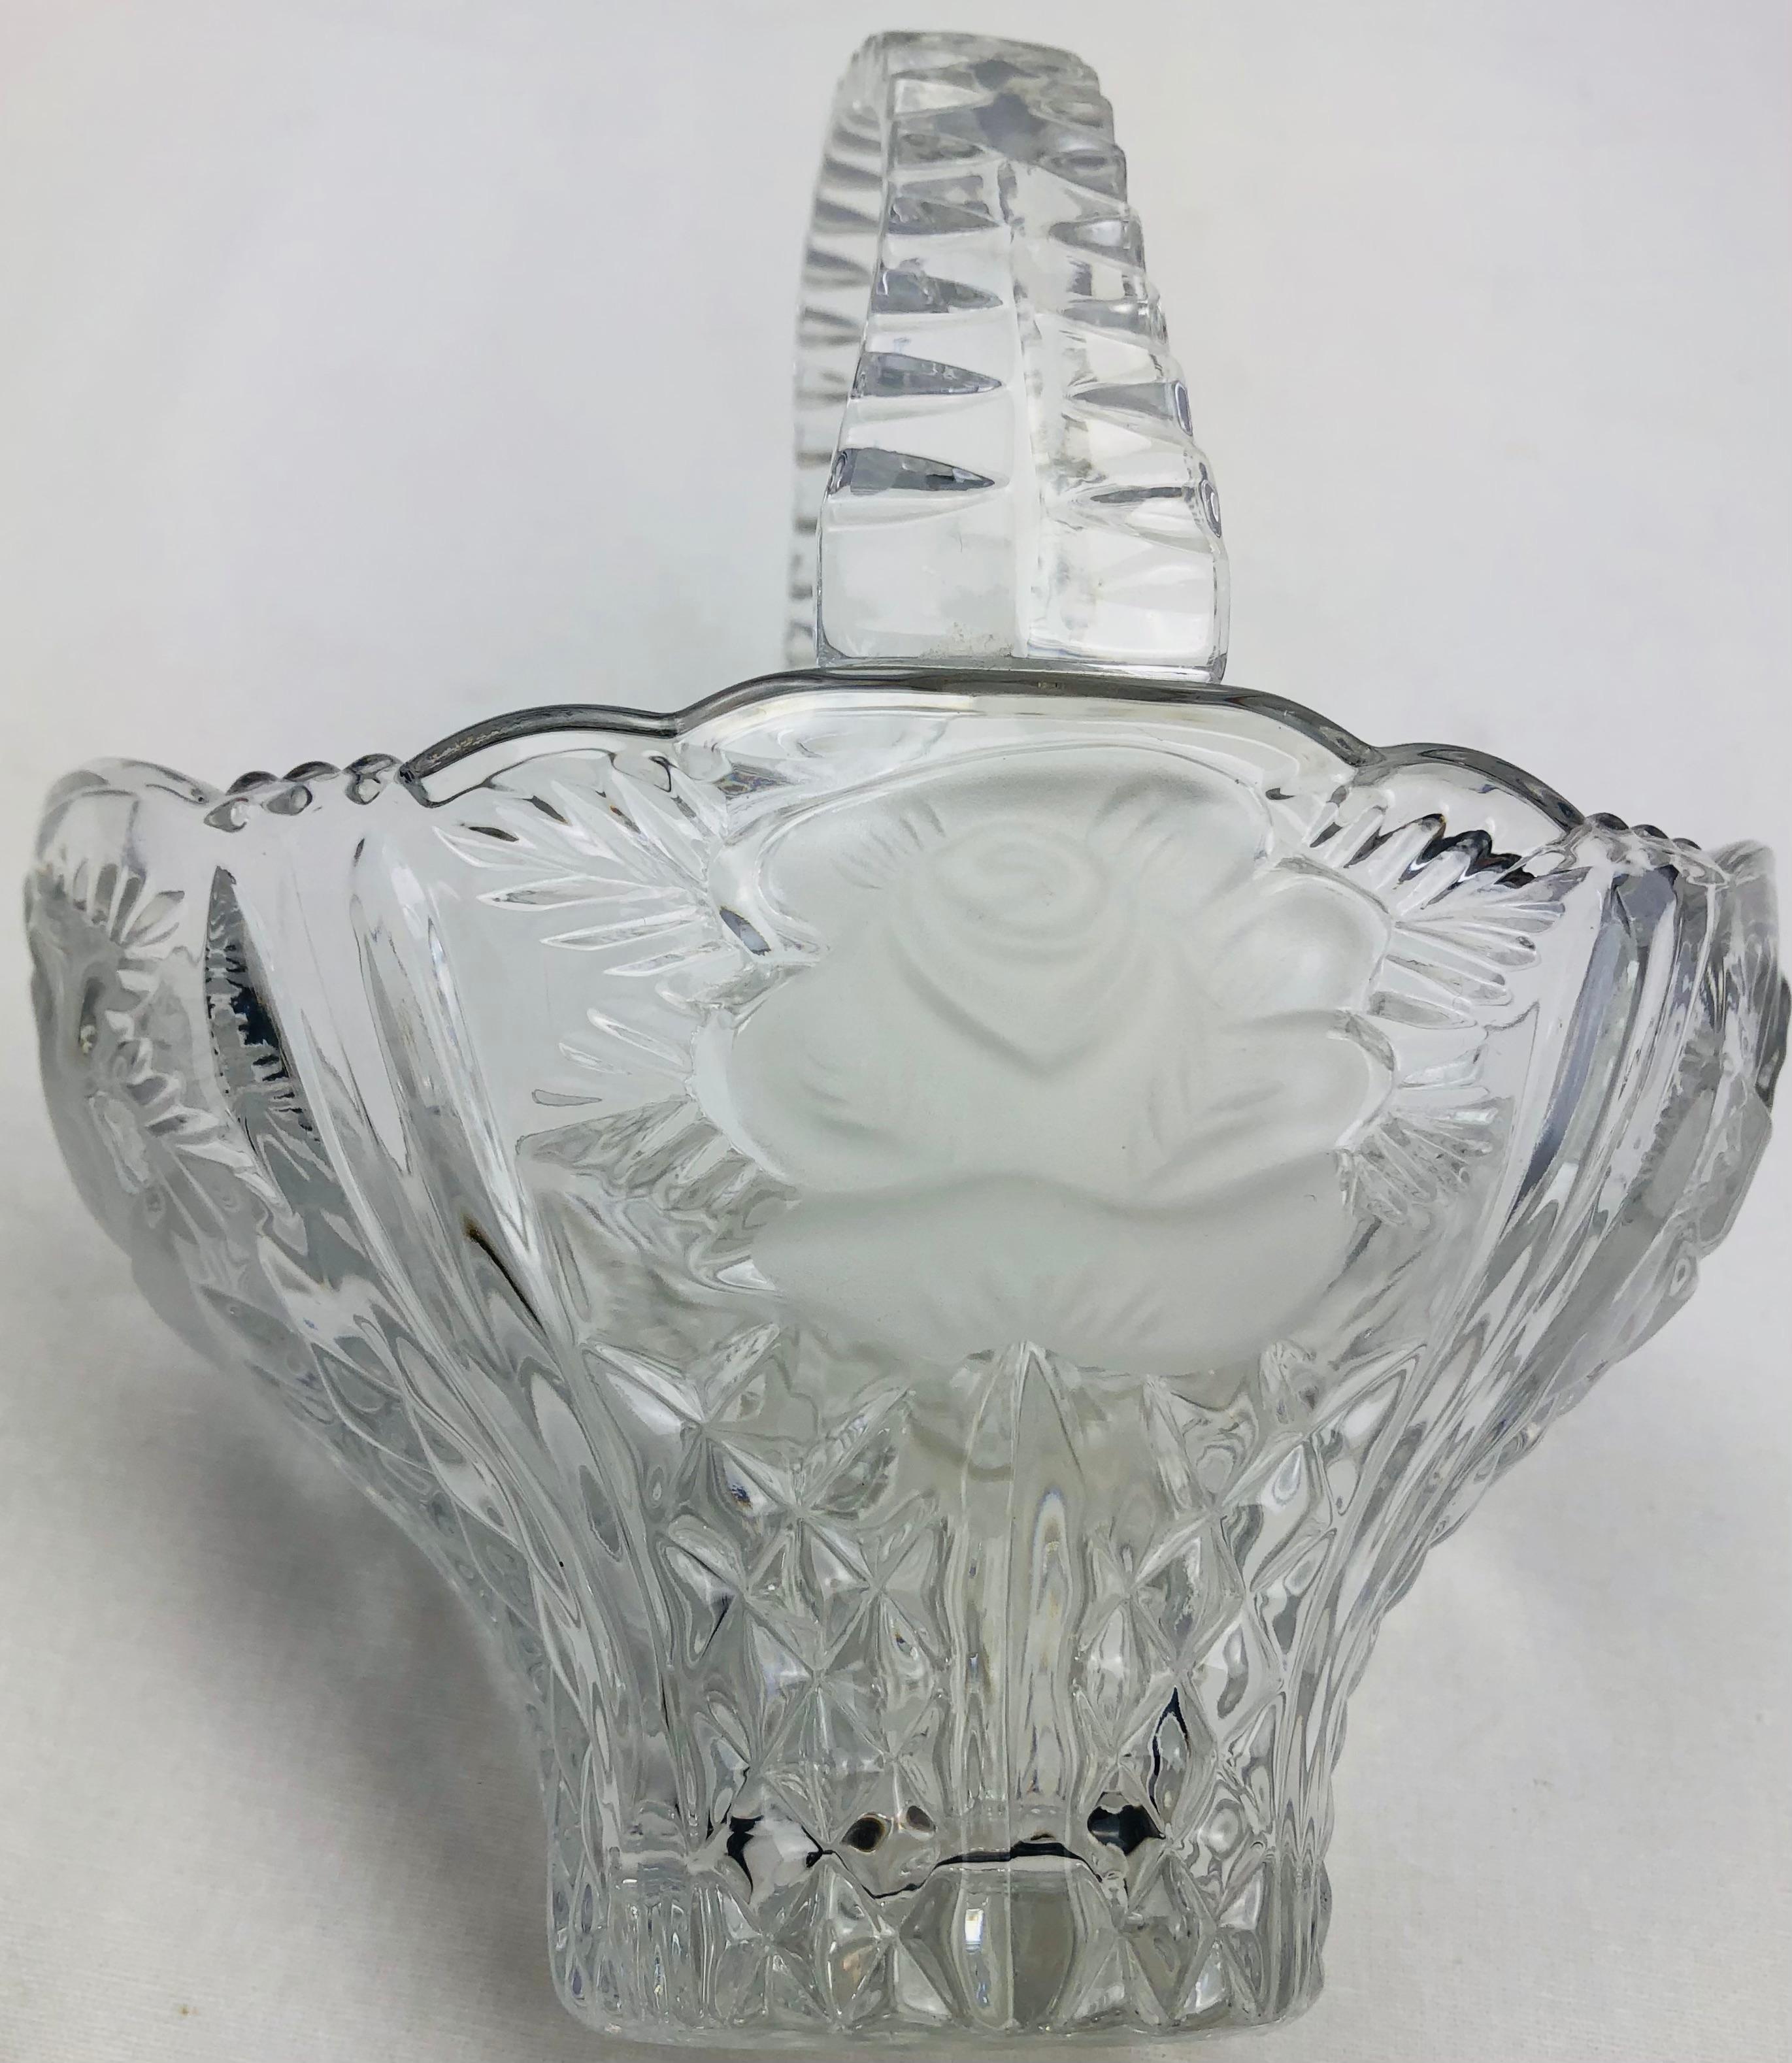 Hübsche Schale aus französischem Kristall mit mattierten Details, die Lalique zugeschrieben wird. Der mattierte und stark verzierte Rand bietet einen tollen Kontrast. 

Verwenden Sie diese Schale für alles, von Süßigkeiten bis hin zu